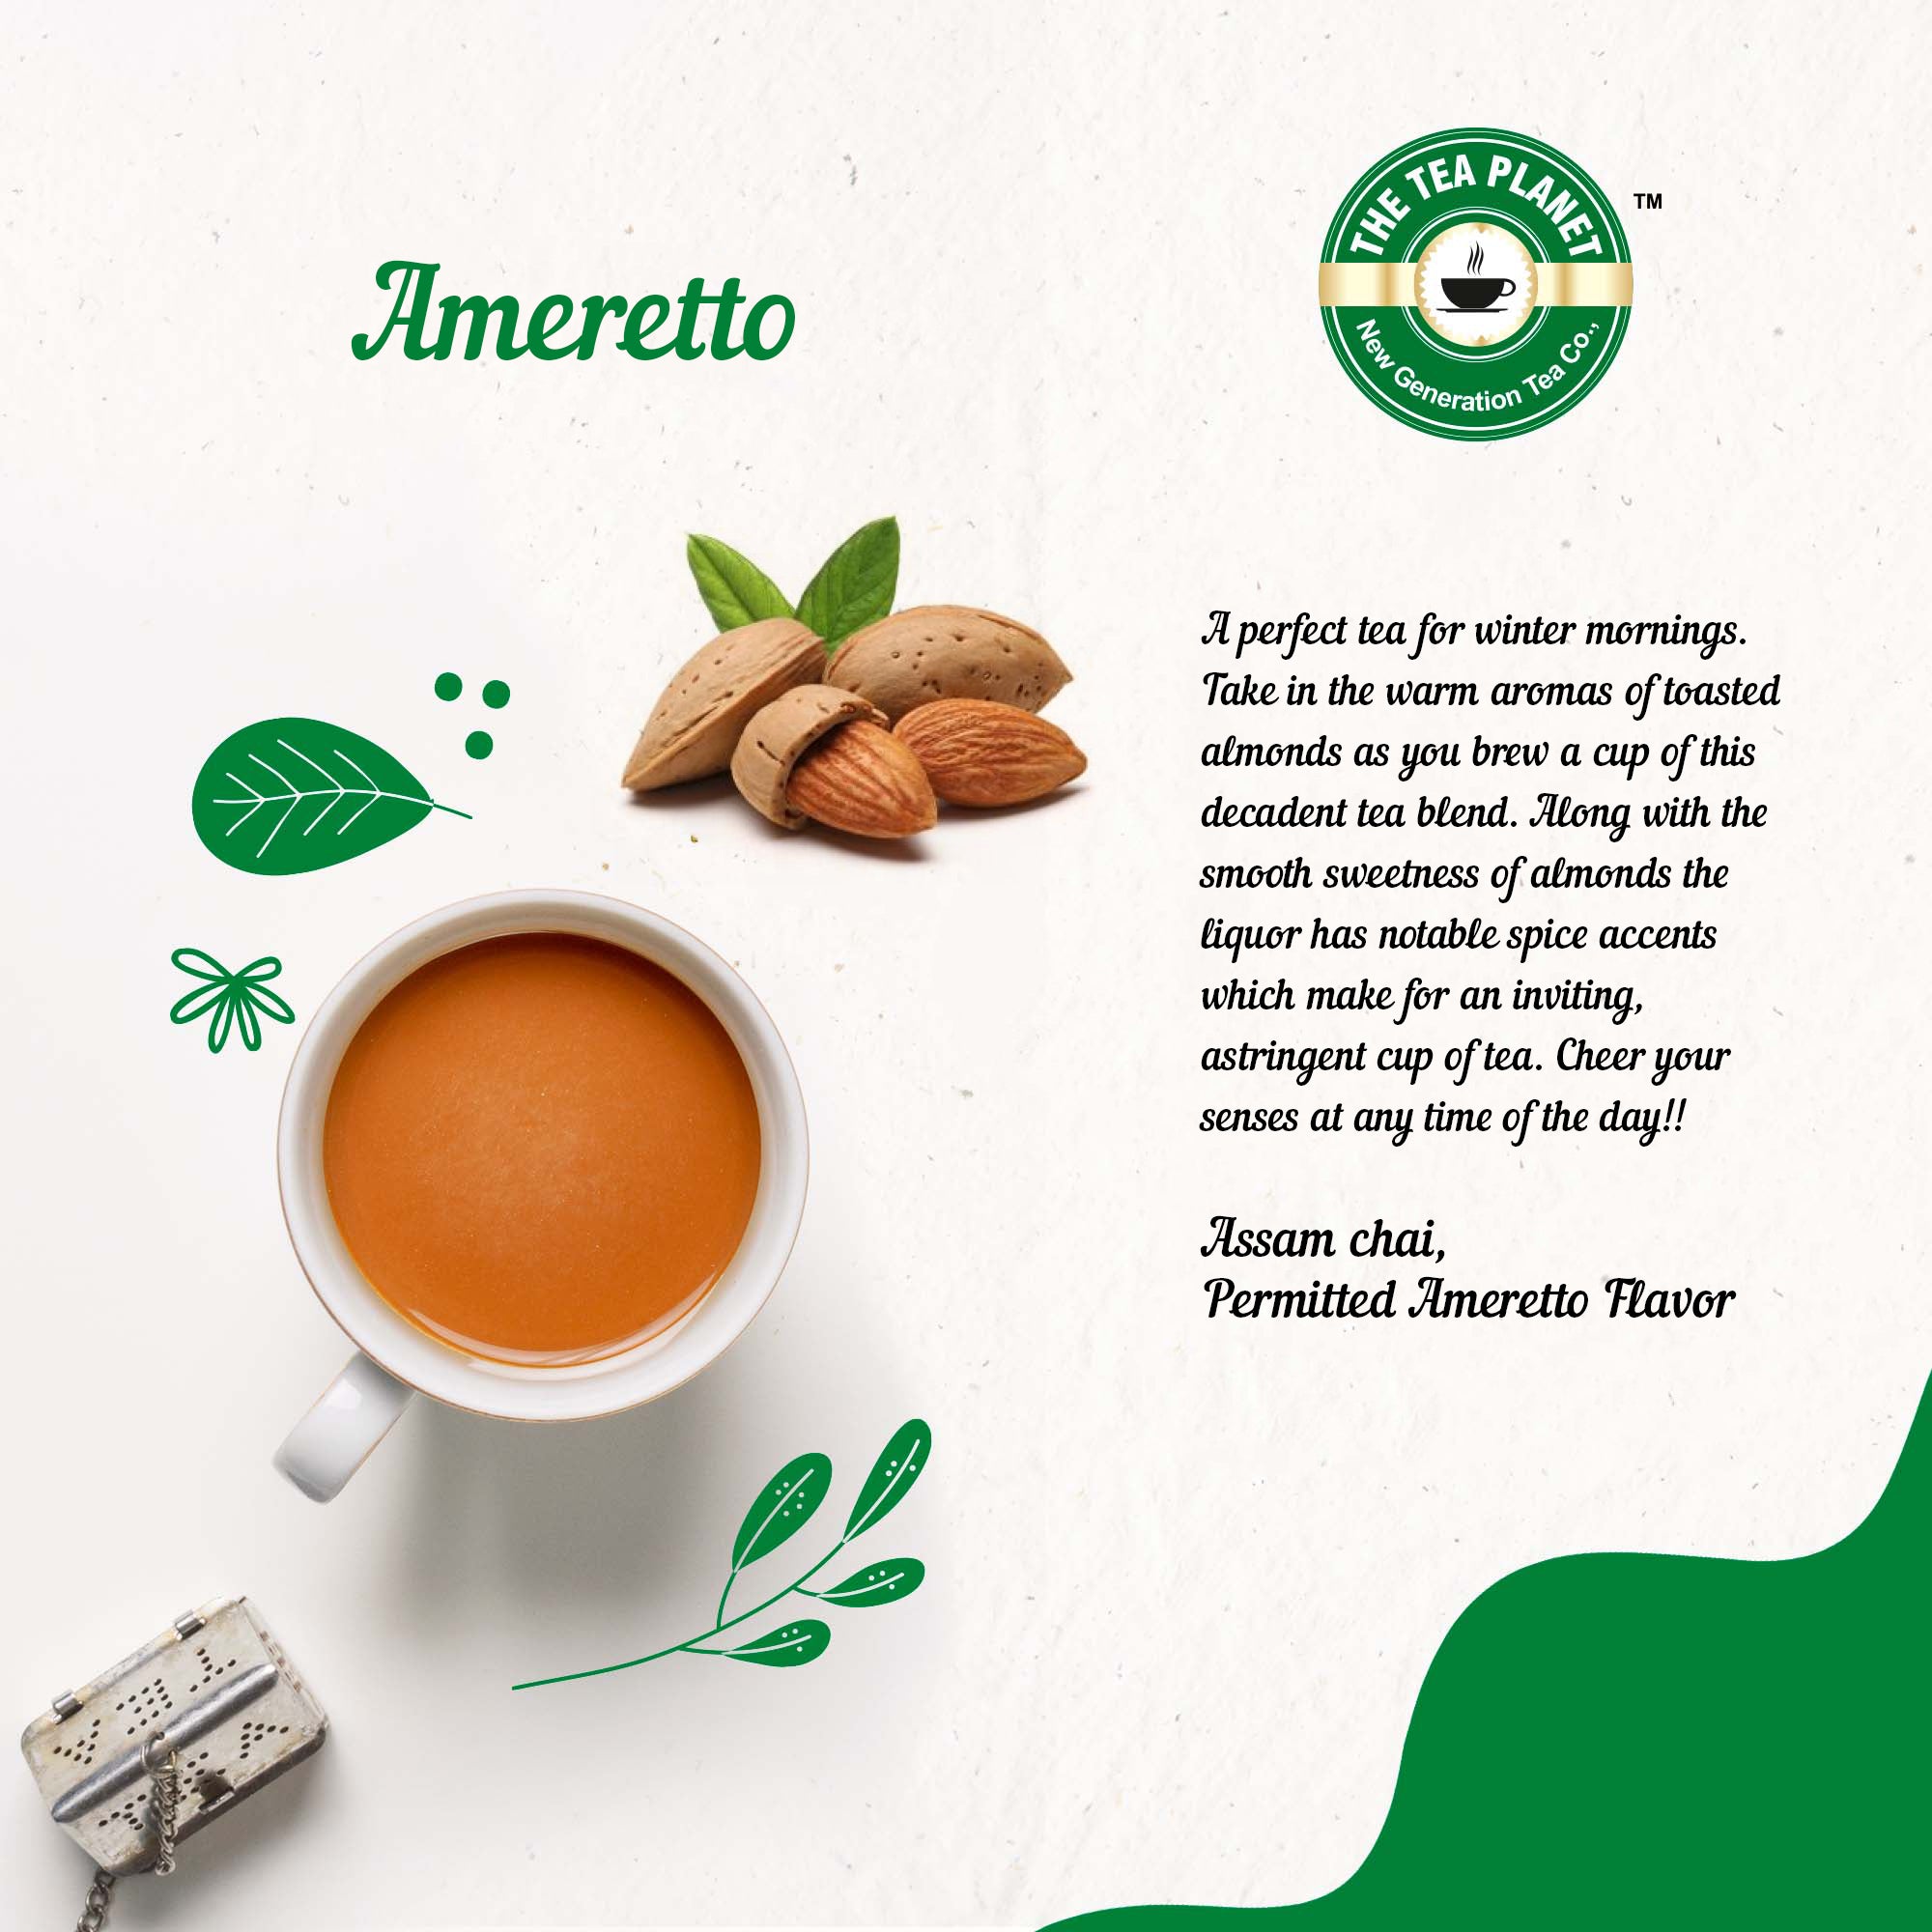 Ameretto Flavored CTC Tea 3